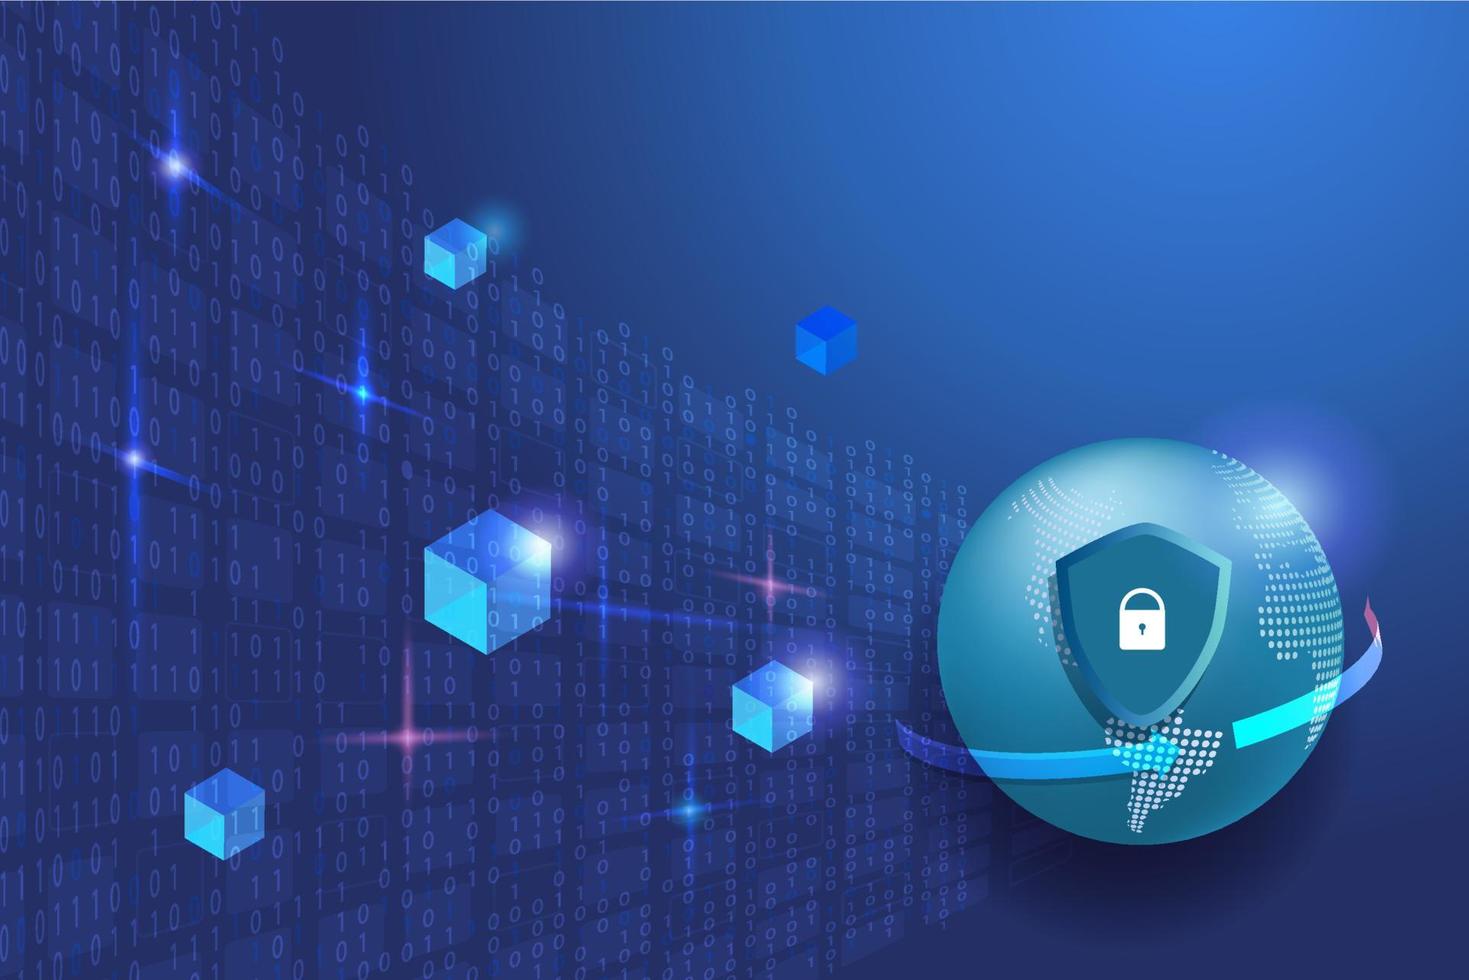 red de seguridad cibernética con tecnología de cadena de bloques, protección segura de datos del proveedor de servicios digitales. escudo y candado con conexión de red de seguridad en globo. vector